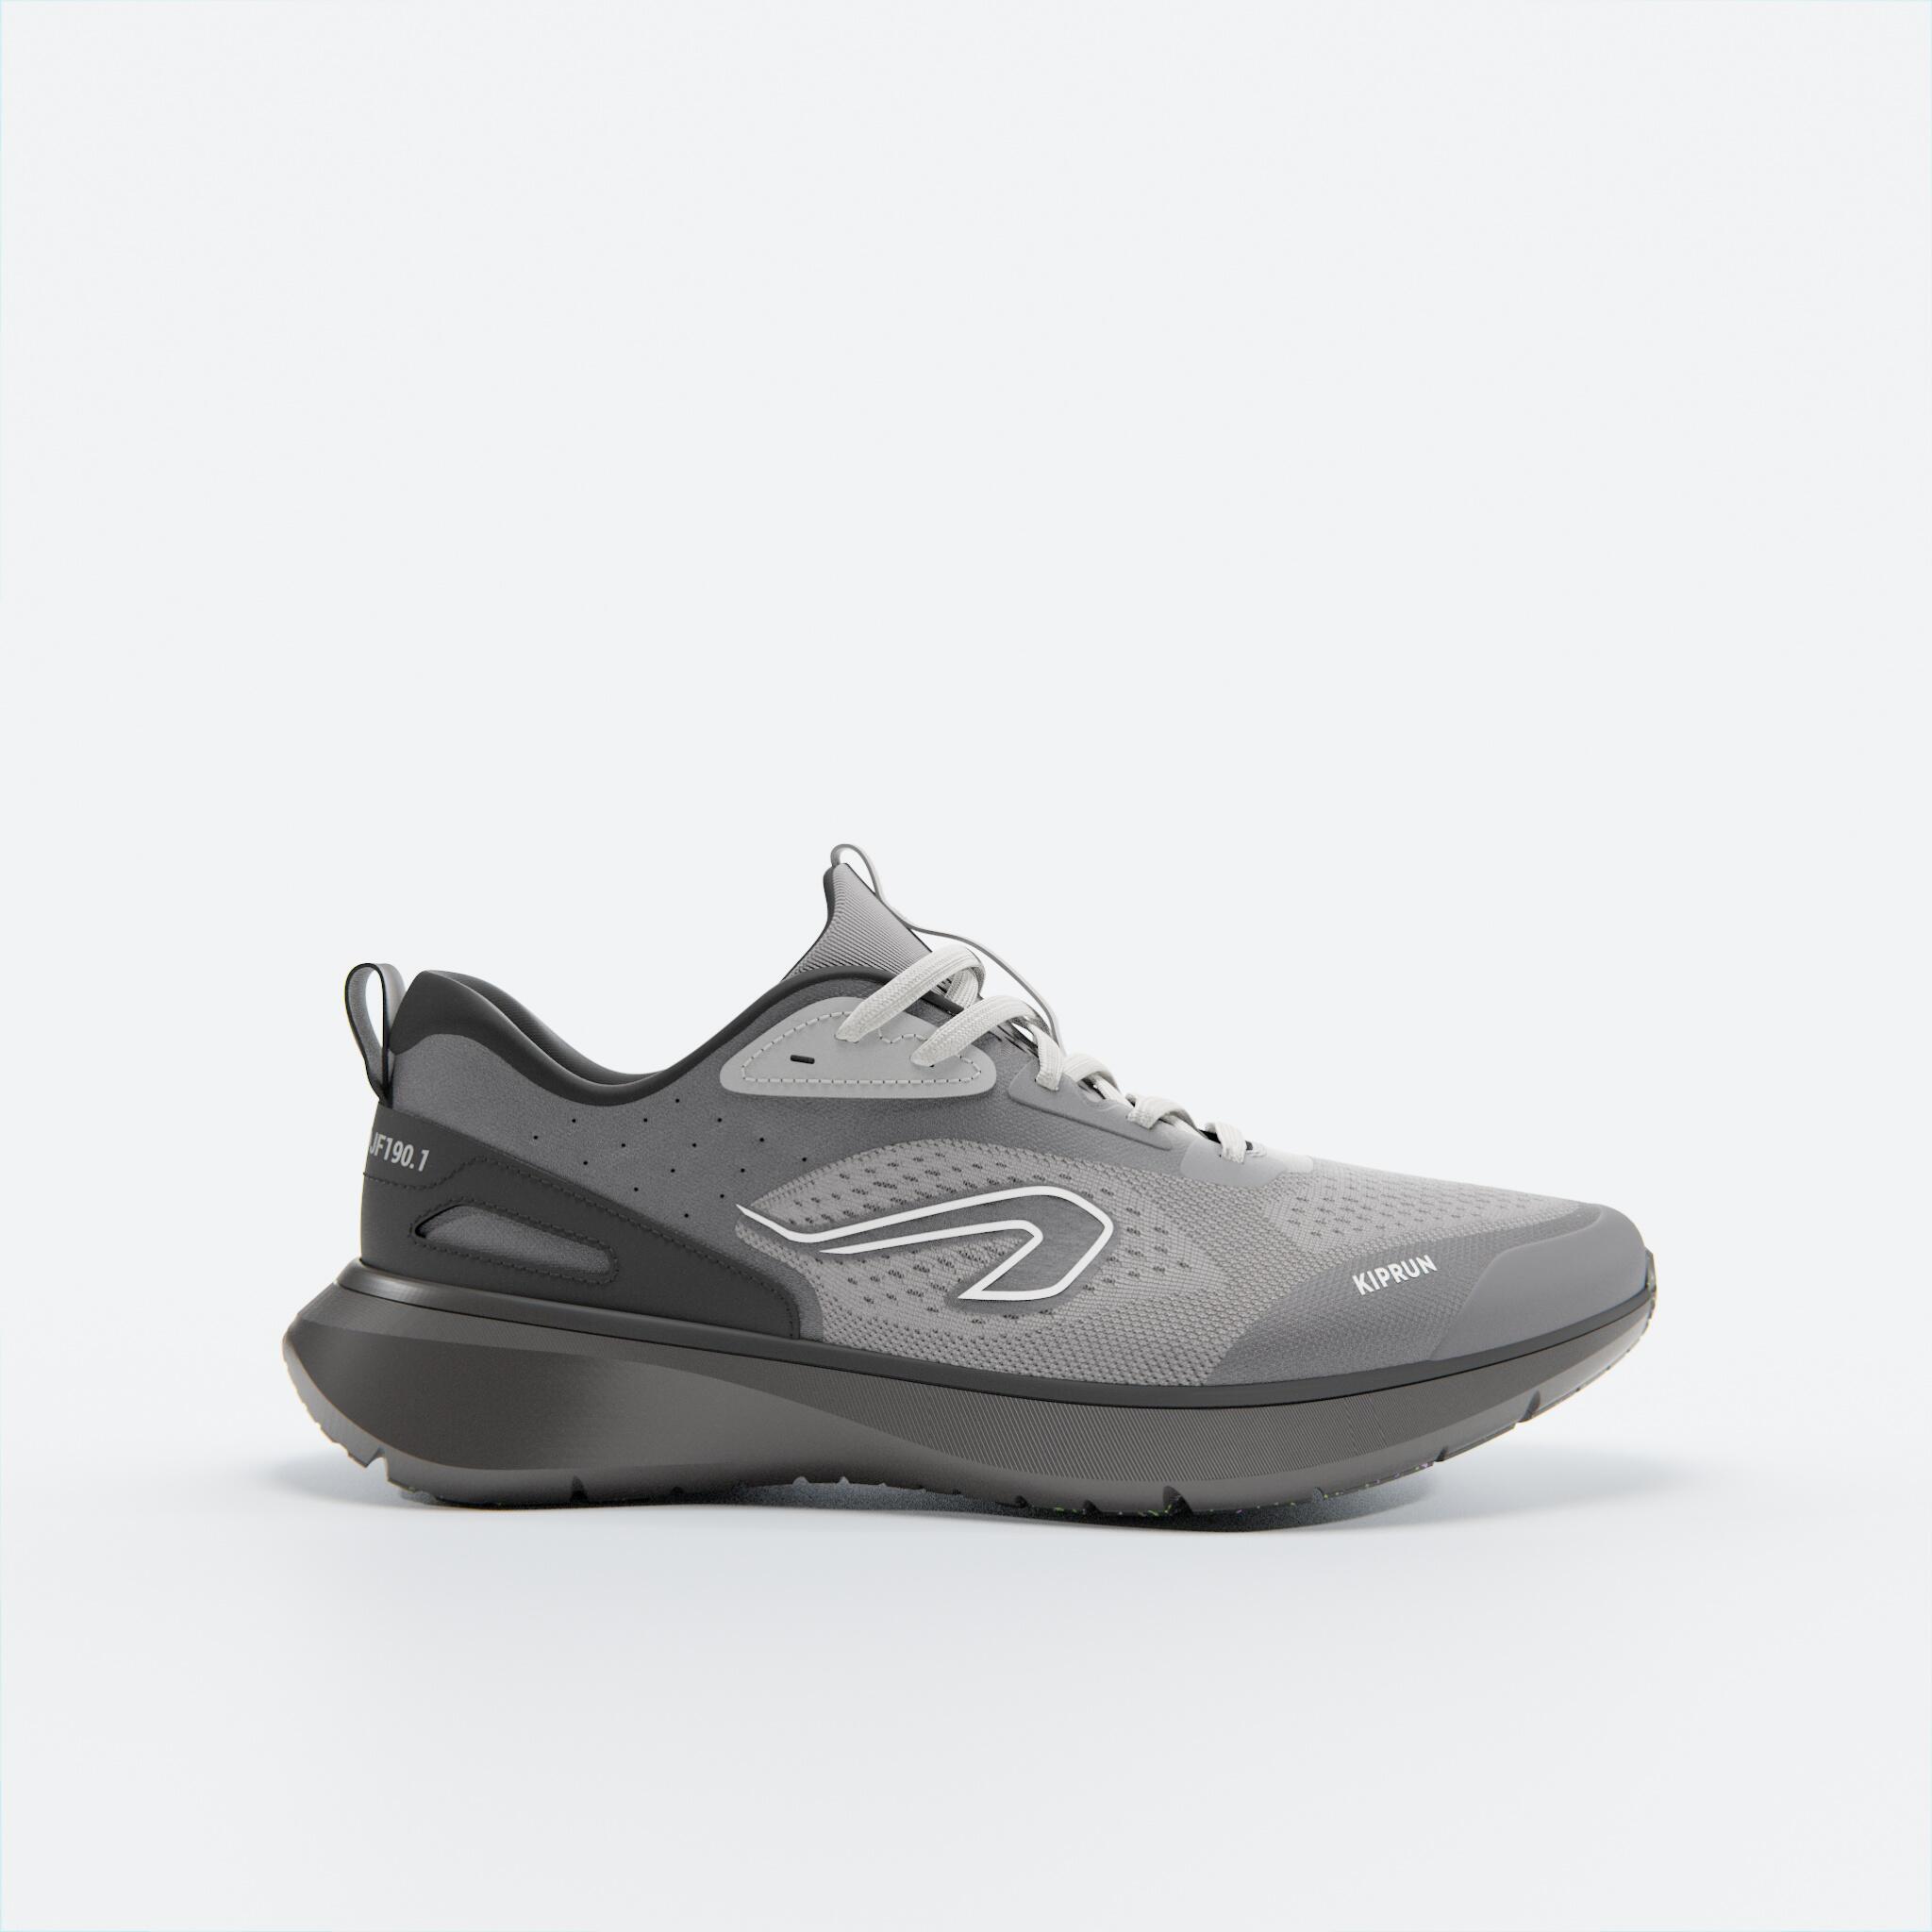 JOGFLOW 190.1 Men's Running Shoes - Black/Grey 2/7